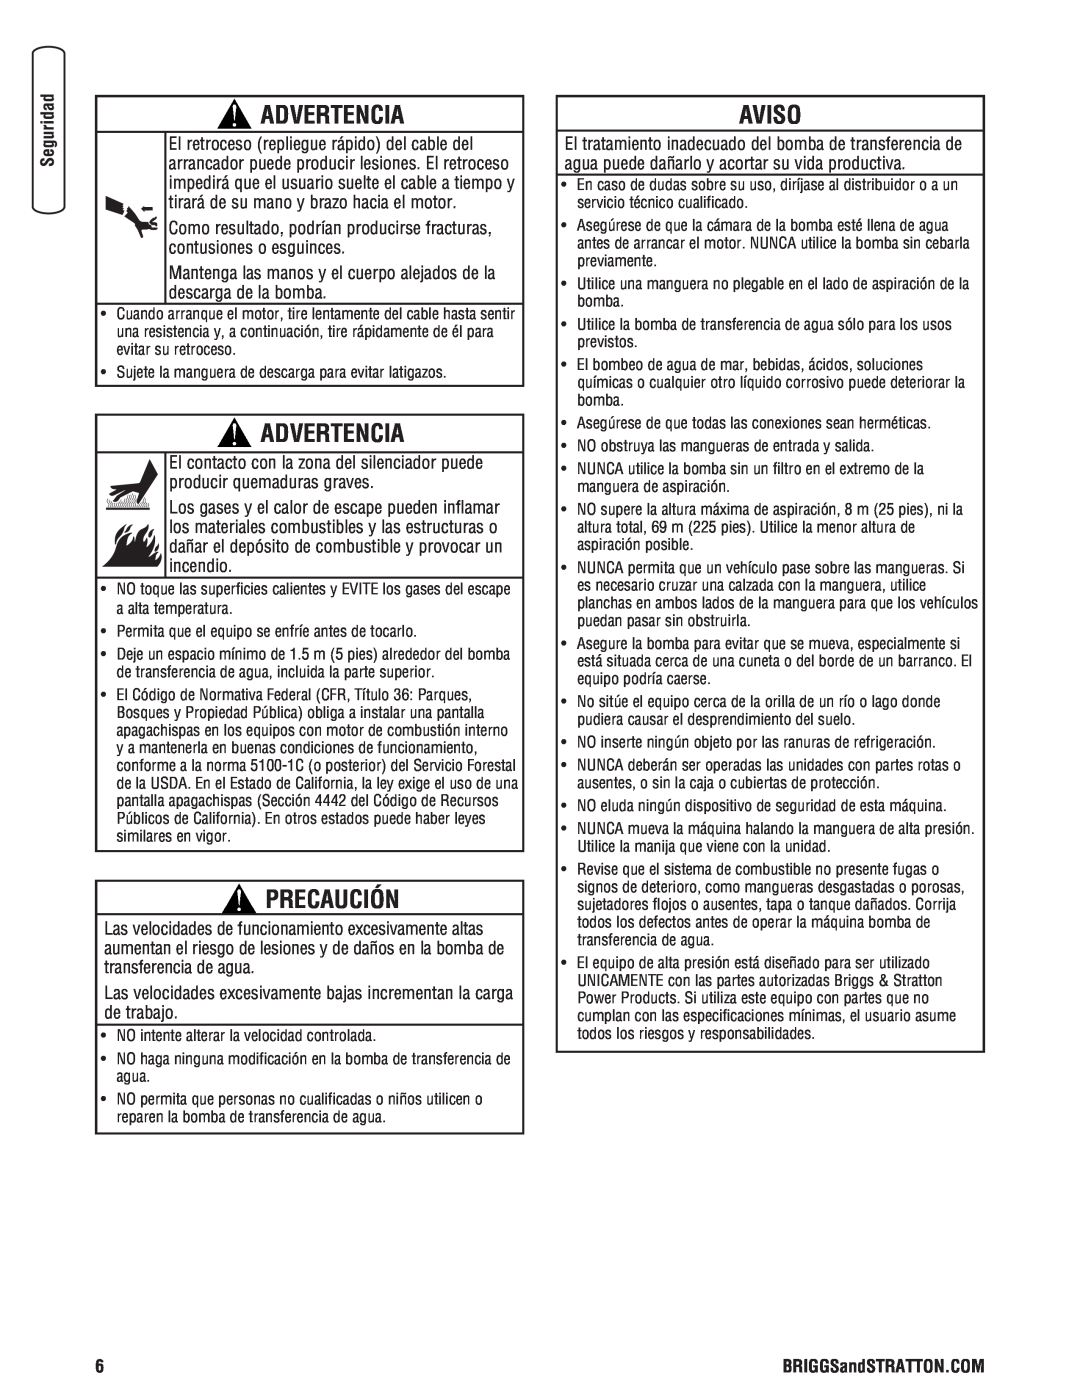 Briggs & Stratton Water Transfer Pump manual Aviso, Advertencia, Precaución 